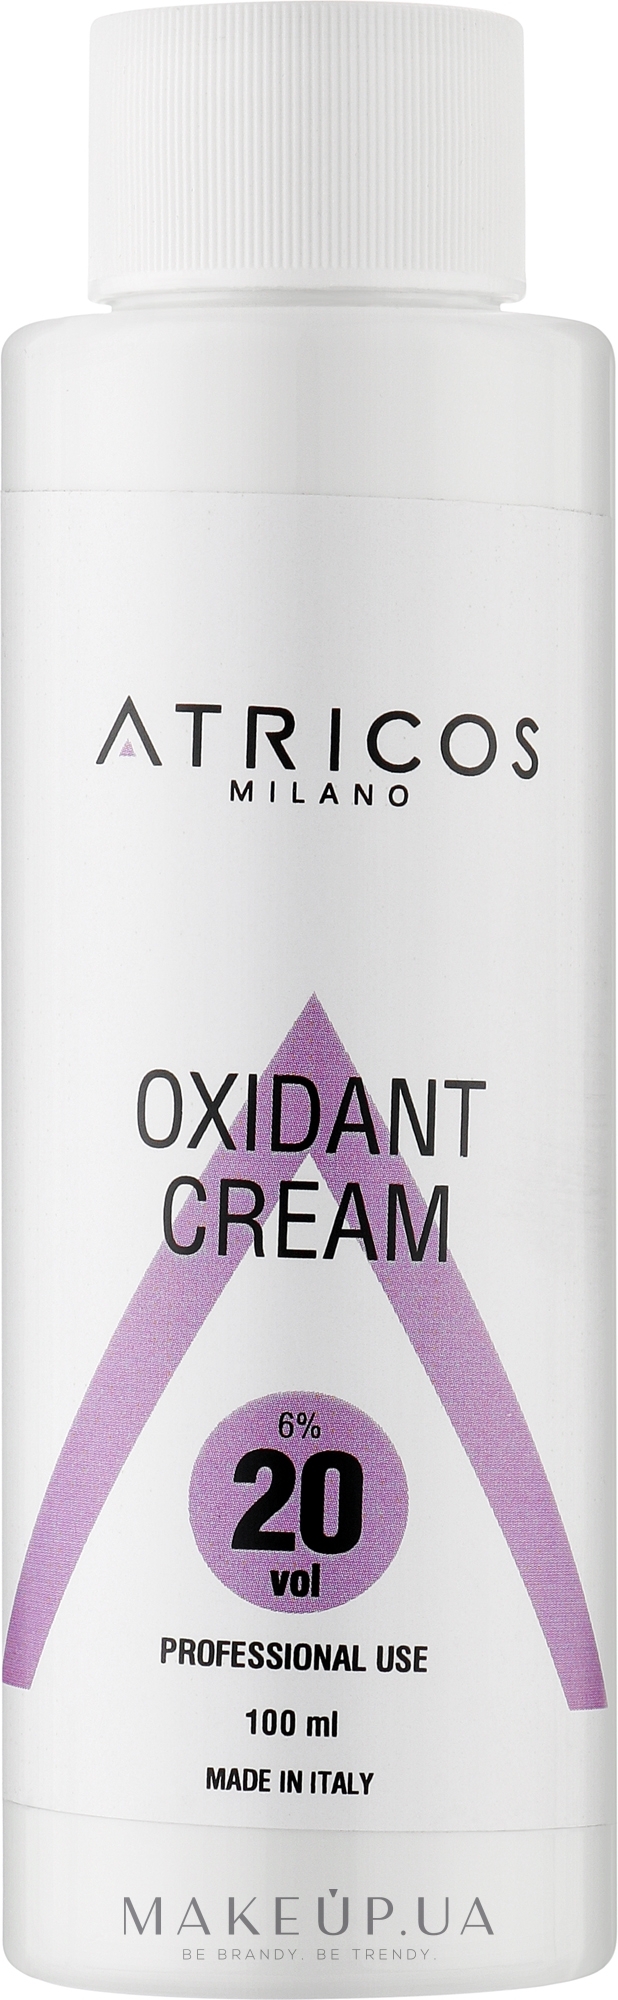 Оксидант-крем для фарбування та освітлення пасом - Atricos Oxidant Cream 20 Vol 6% — фото 100ml